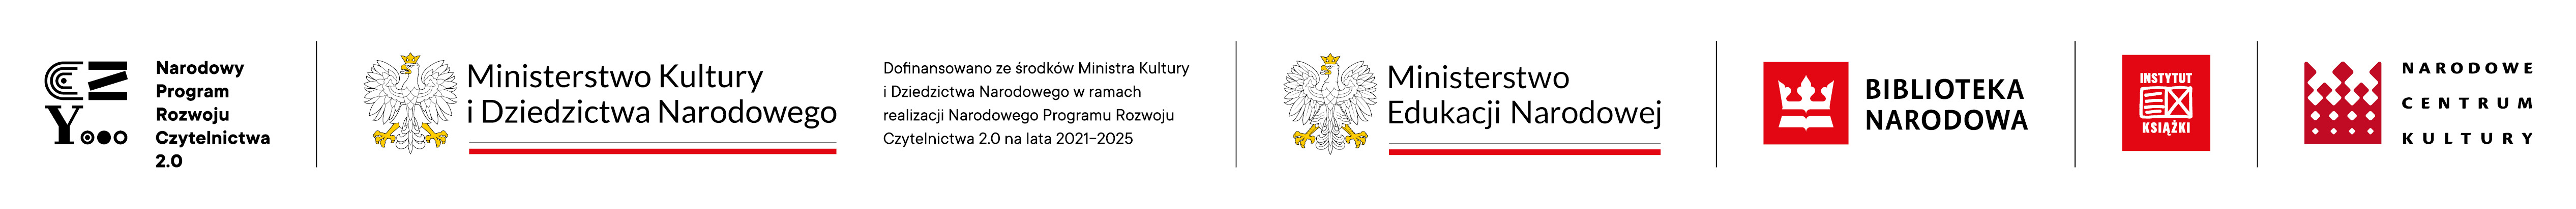 Logotypy Programu